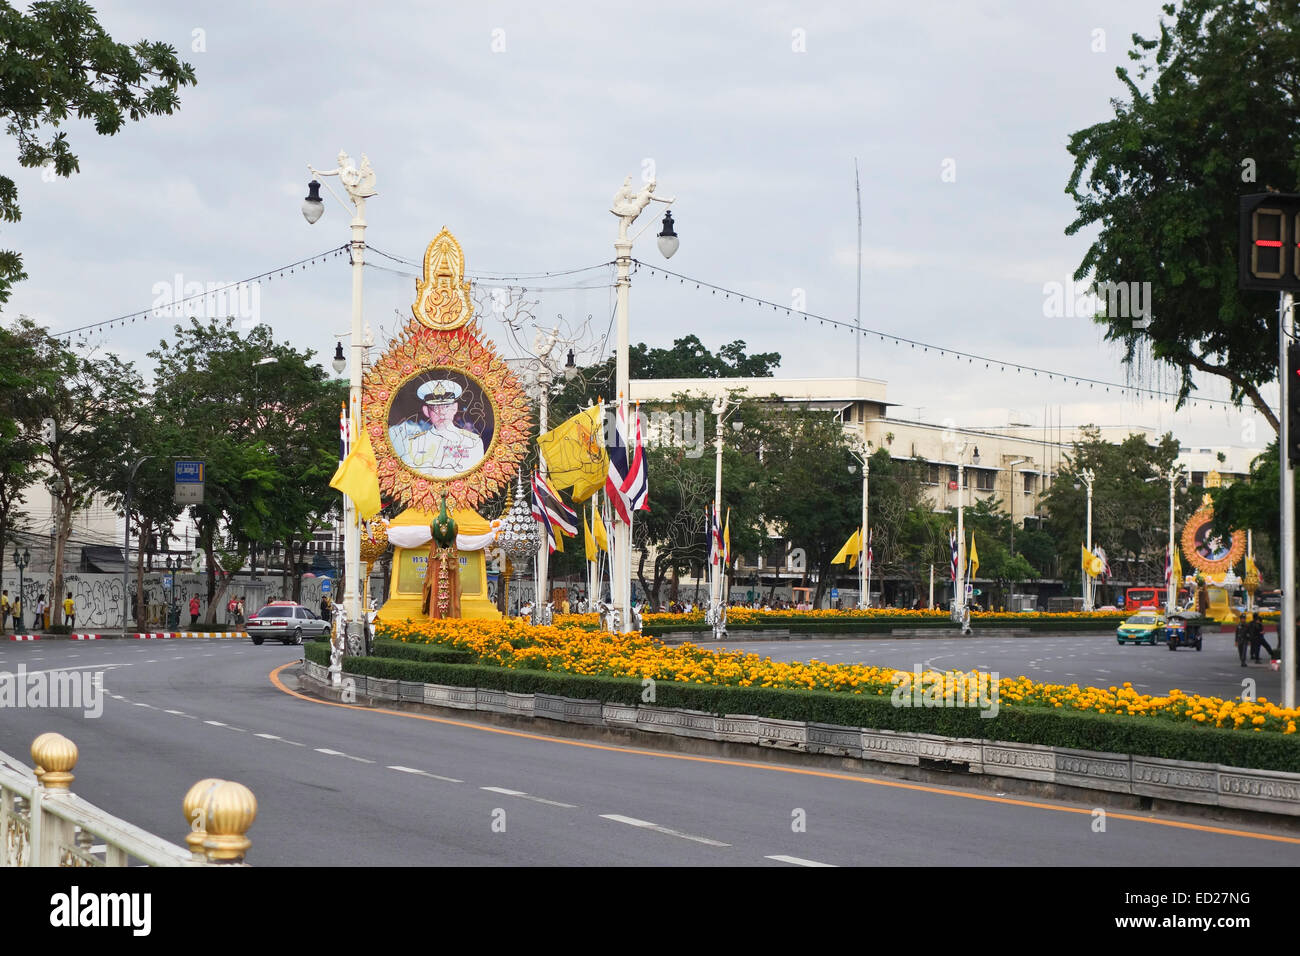 Ritratto di Re Bhumibol Adulyadej sul display per il re del giorno a Bangkok, Thailandia, Sud-est asiatico. Foto Stock